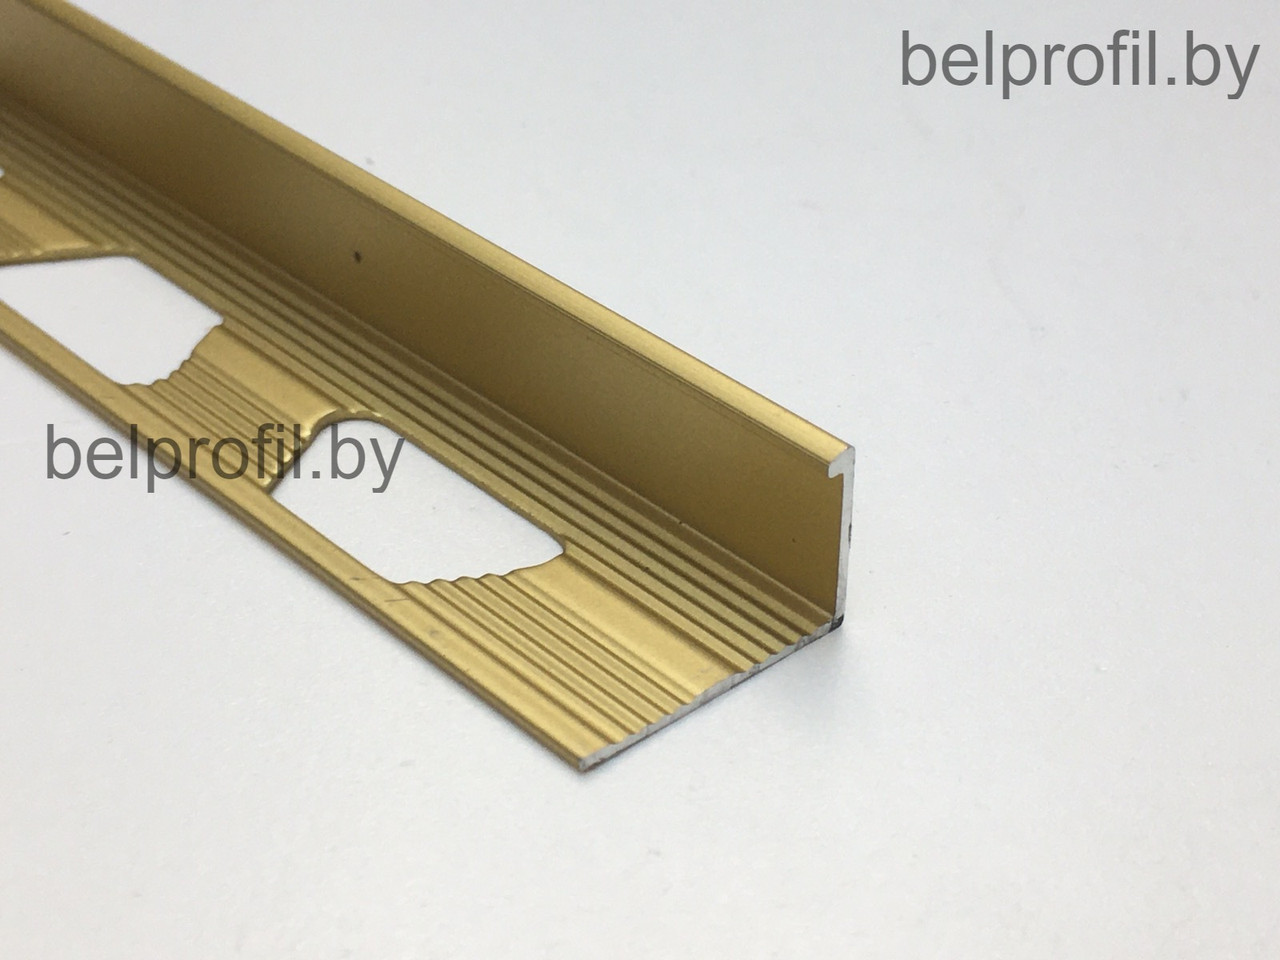 Уголок для плитки L-образный 12 мм, цвет золото мат, 270 см, фото 1